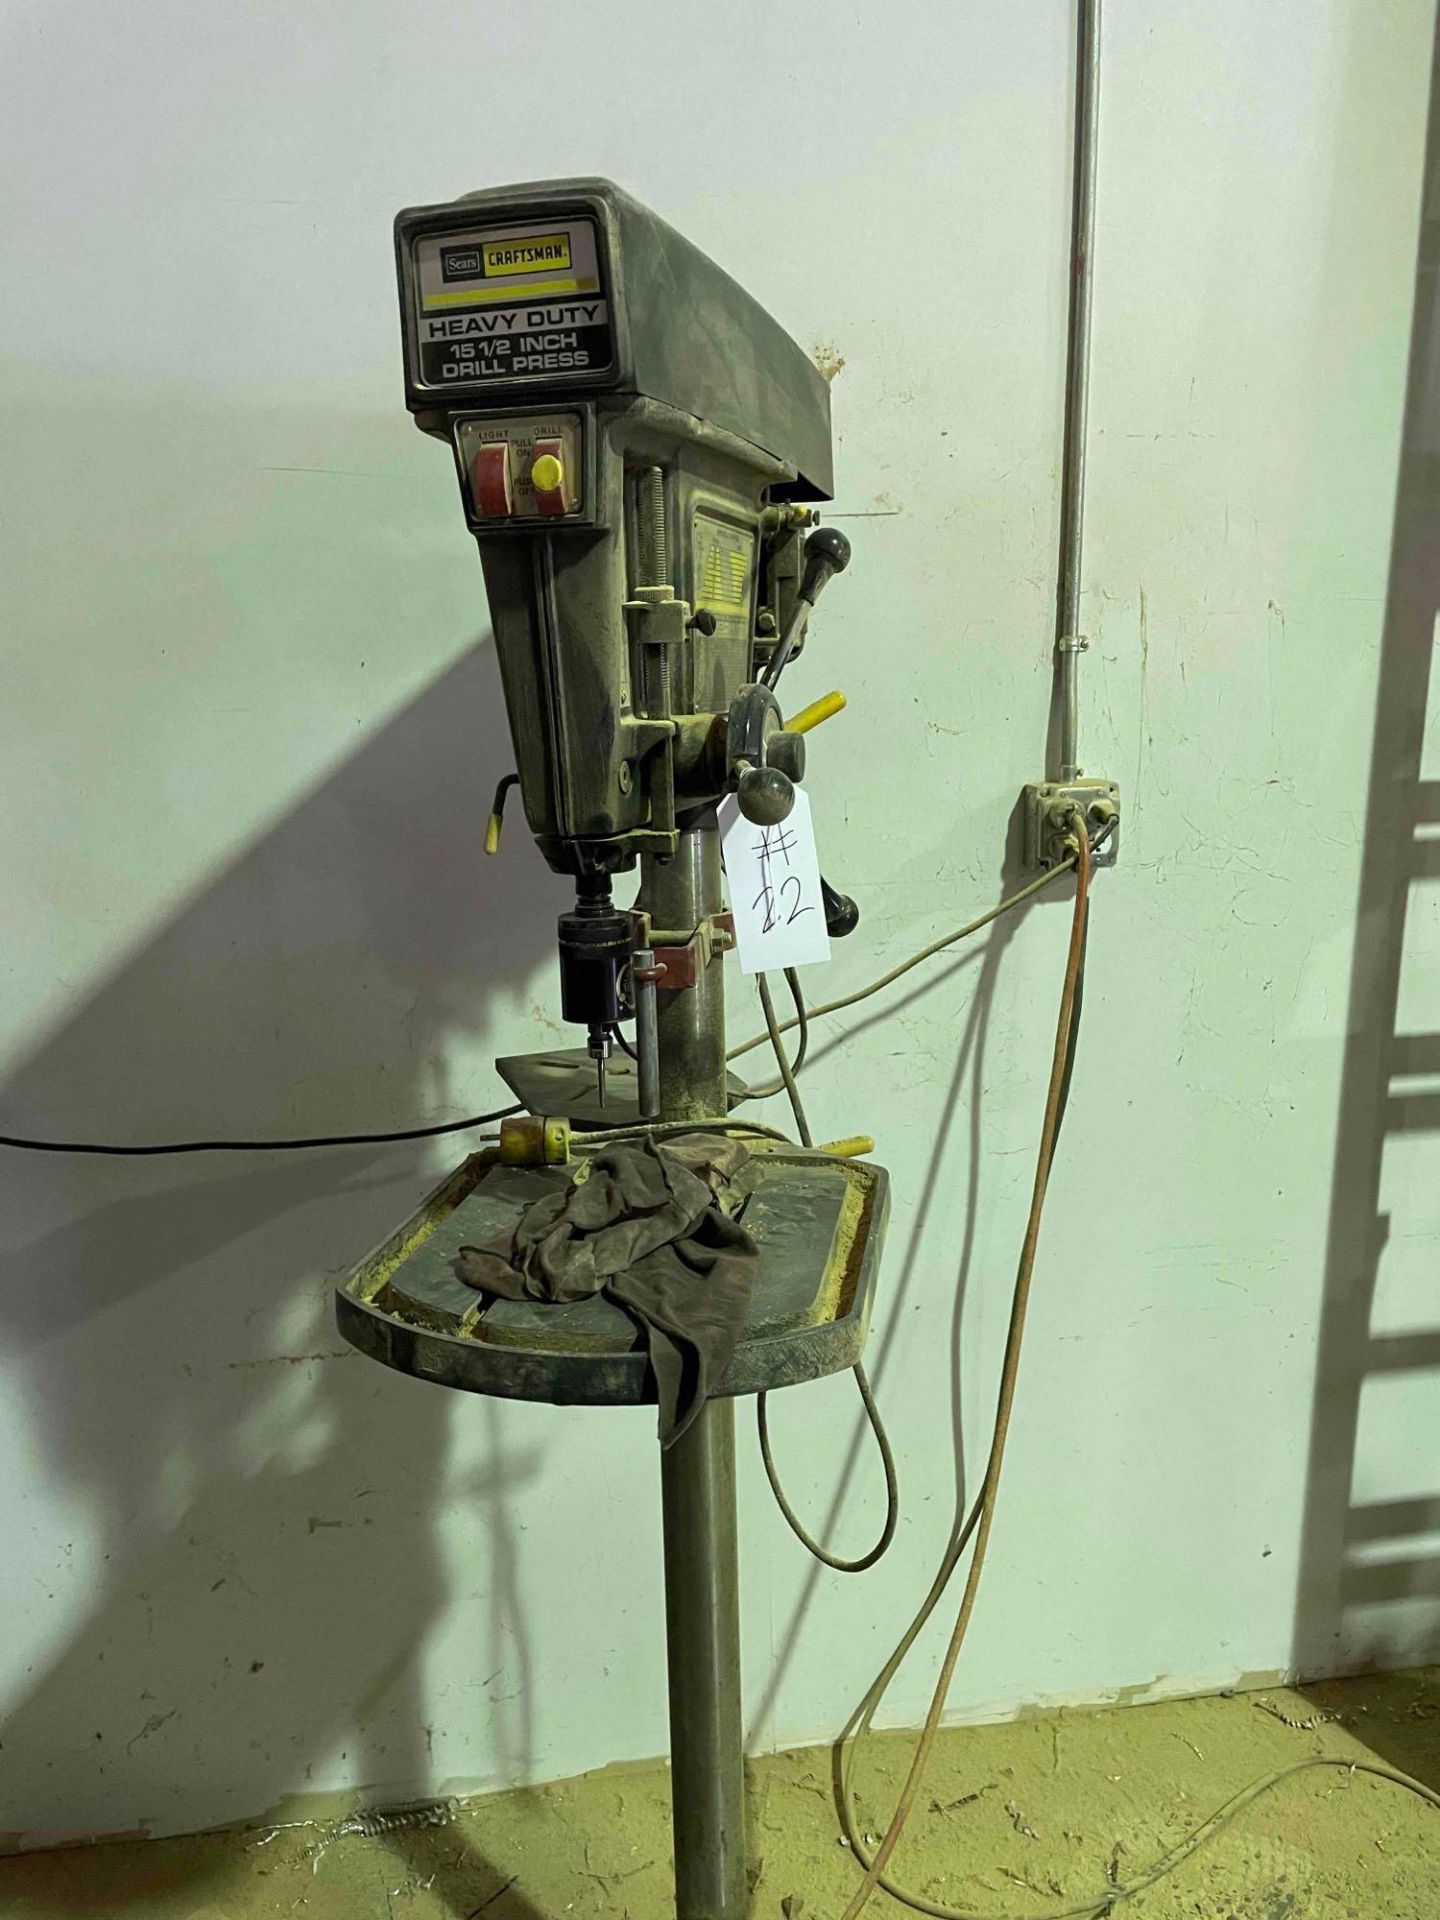 Sears Craftsman 15.5"" drill press